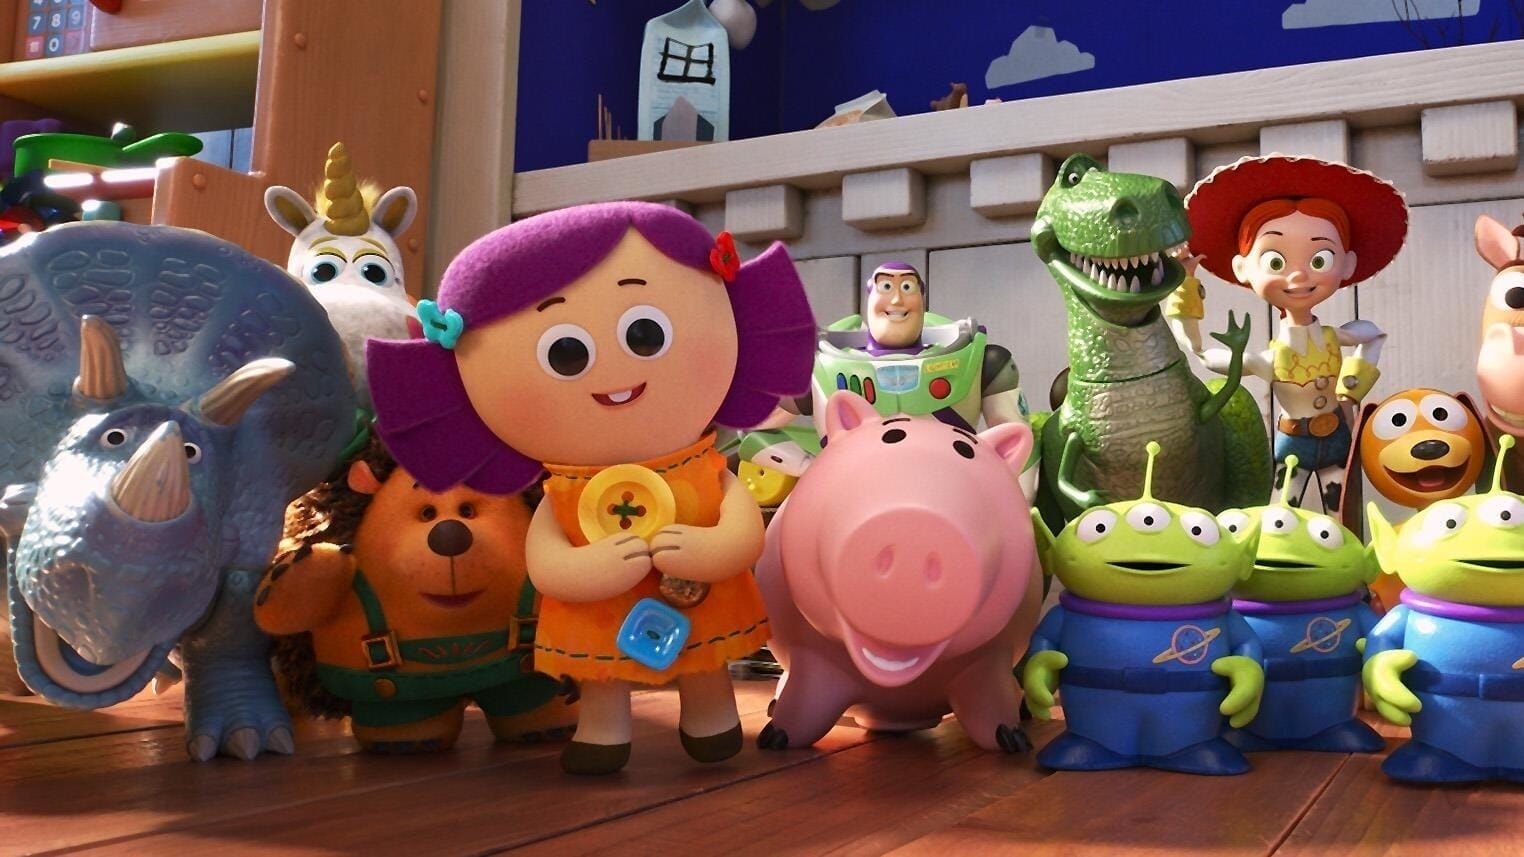 A Toy Story: Alles hört auf kein Kommando